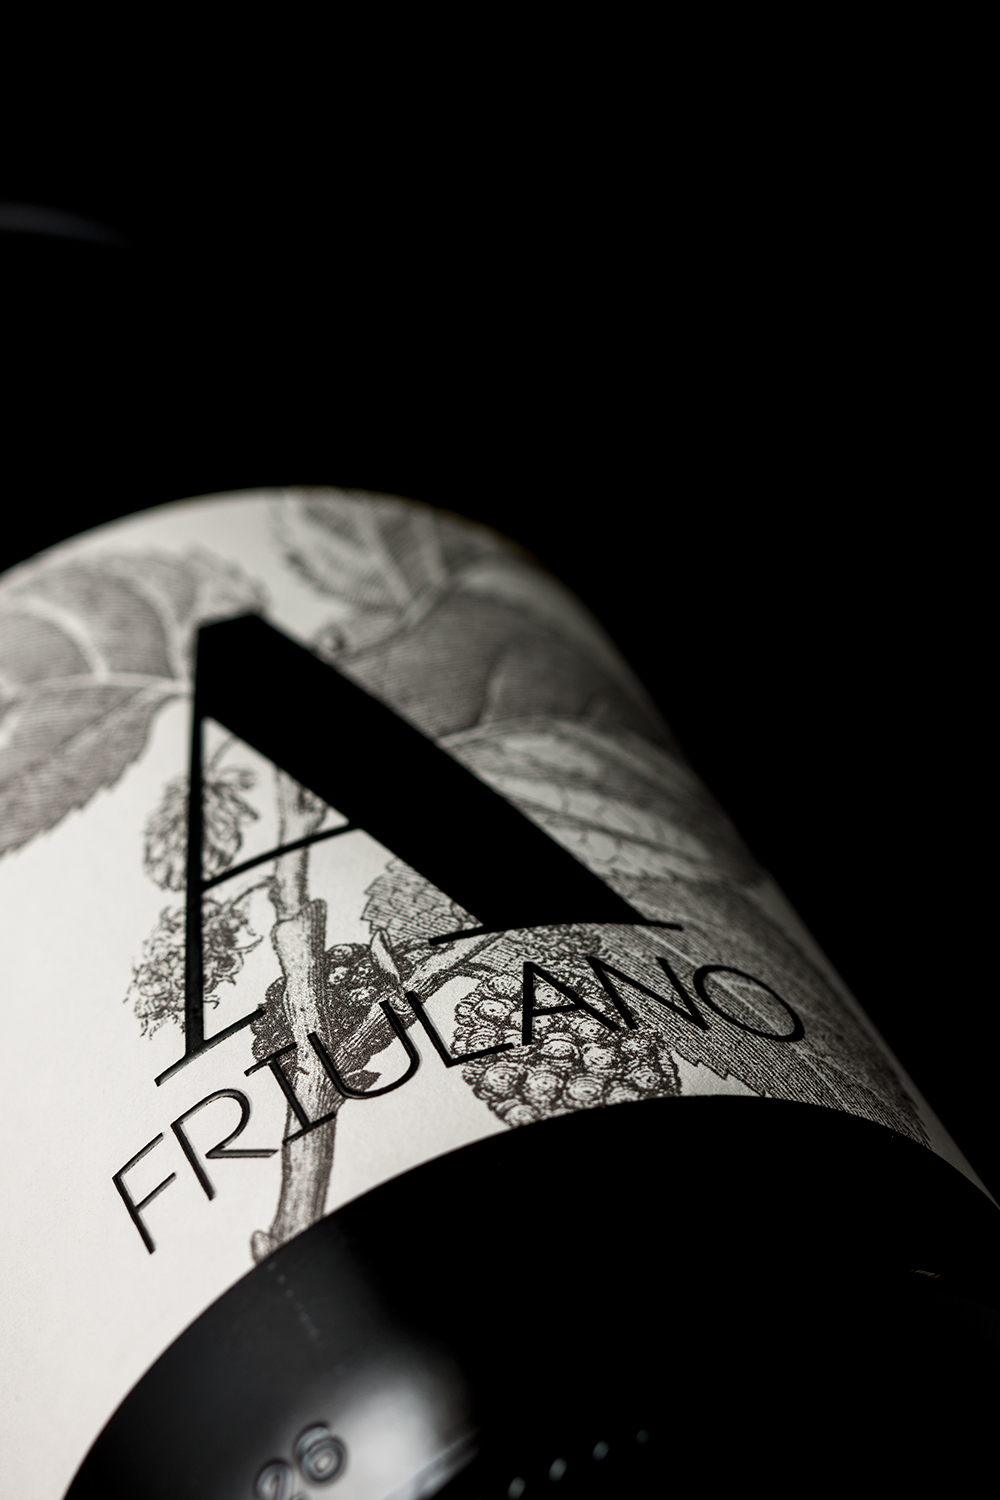 Amandum wines Wine Packaging Brand Design